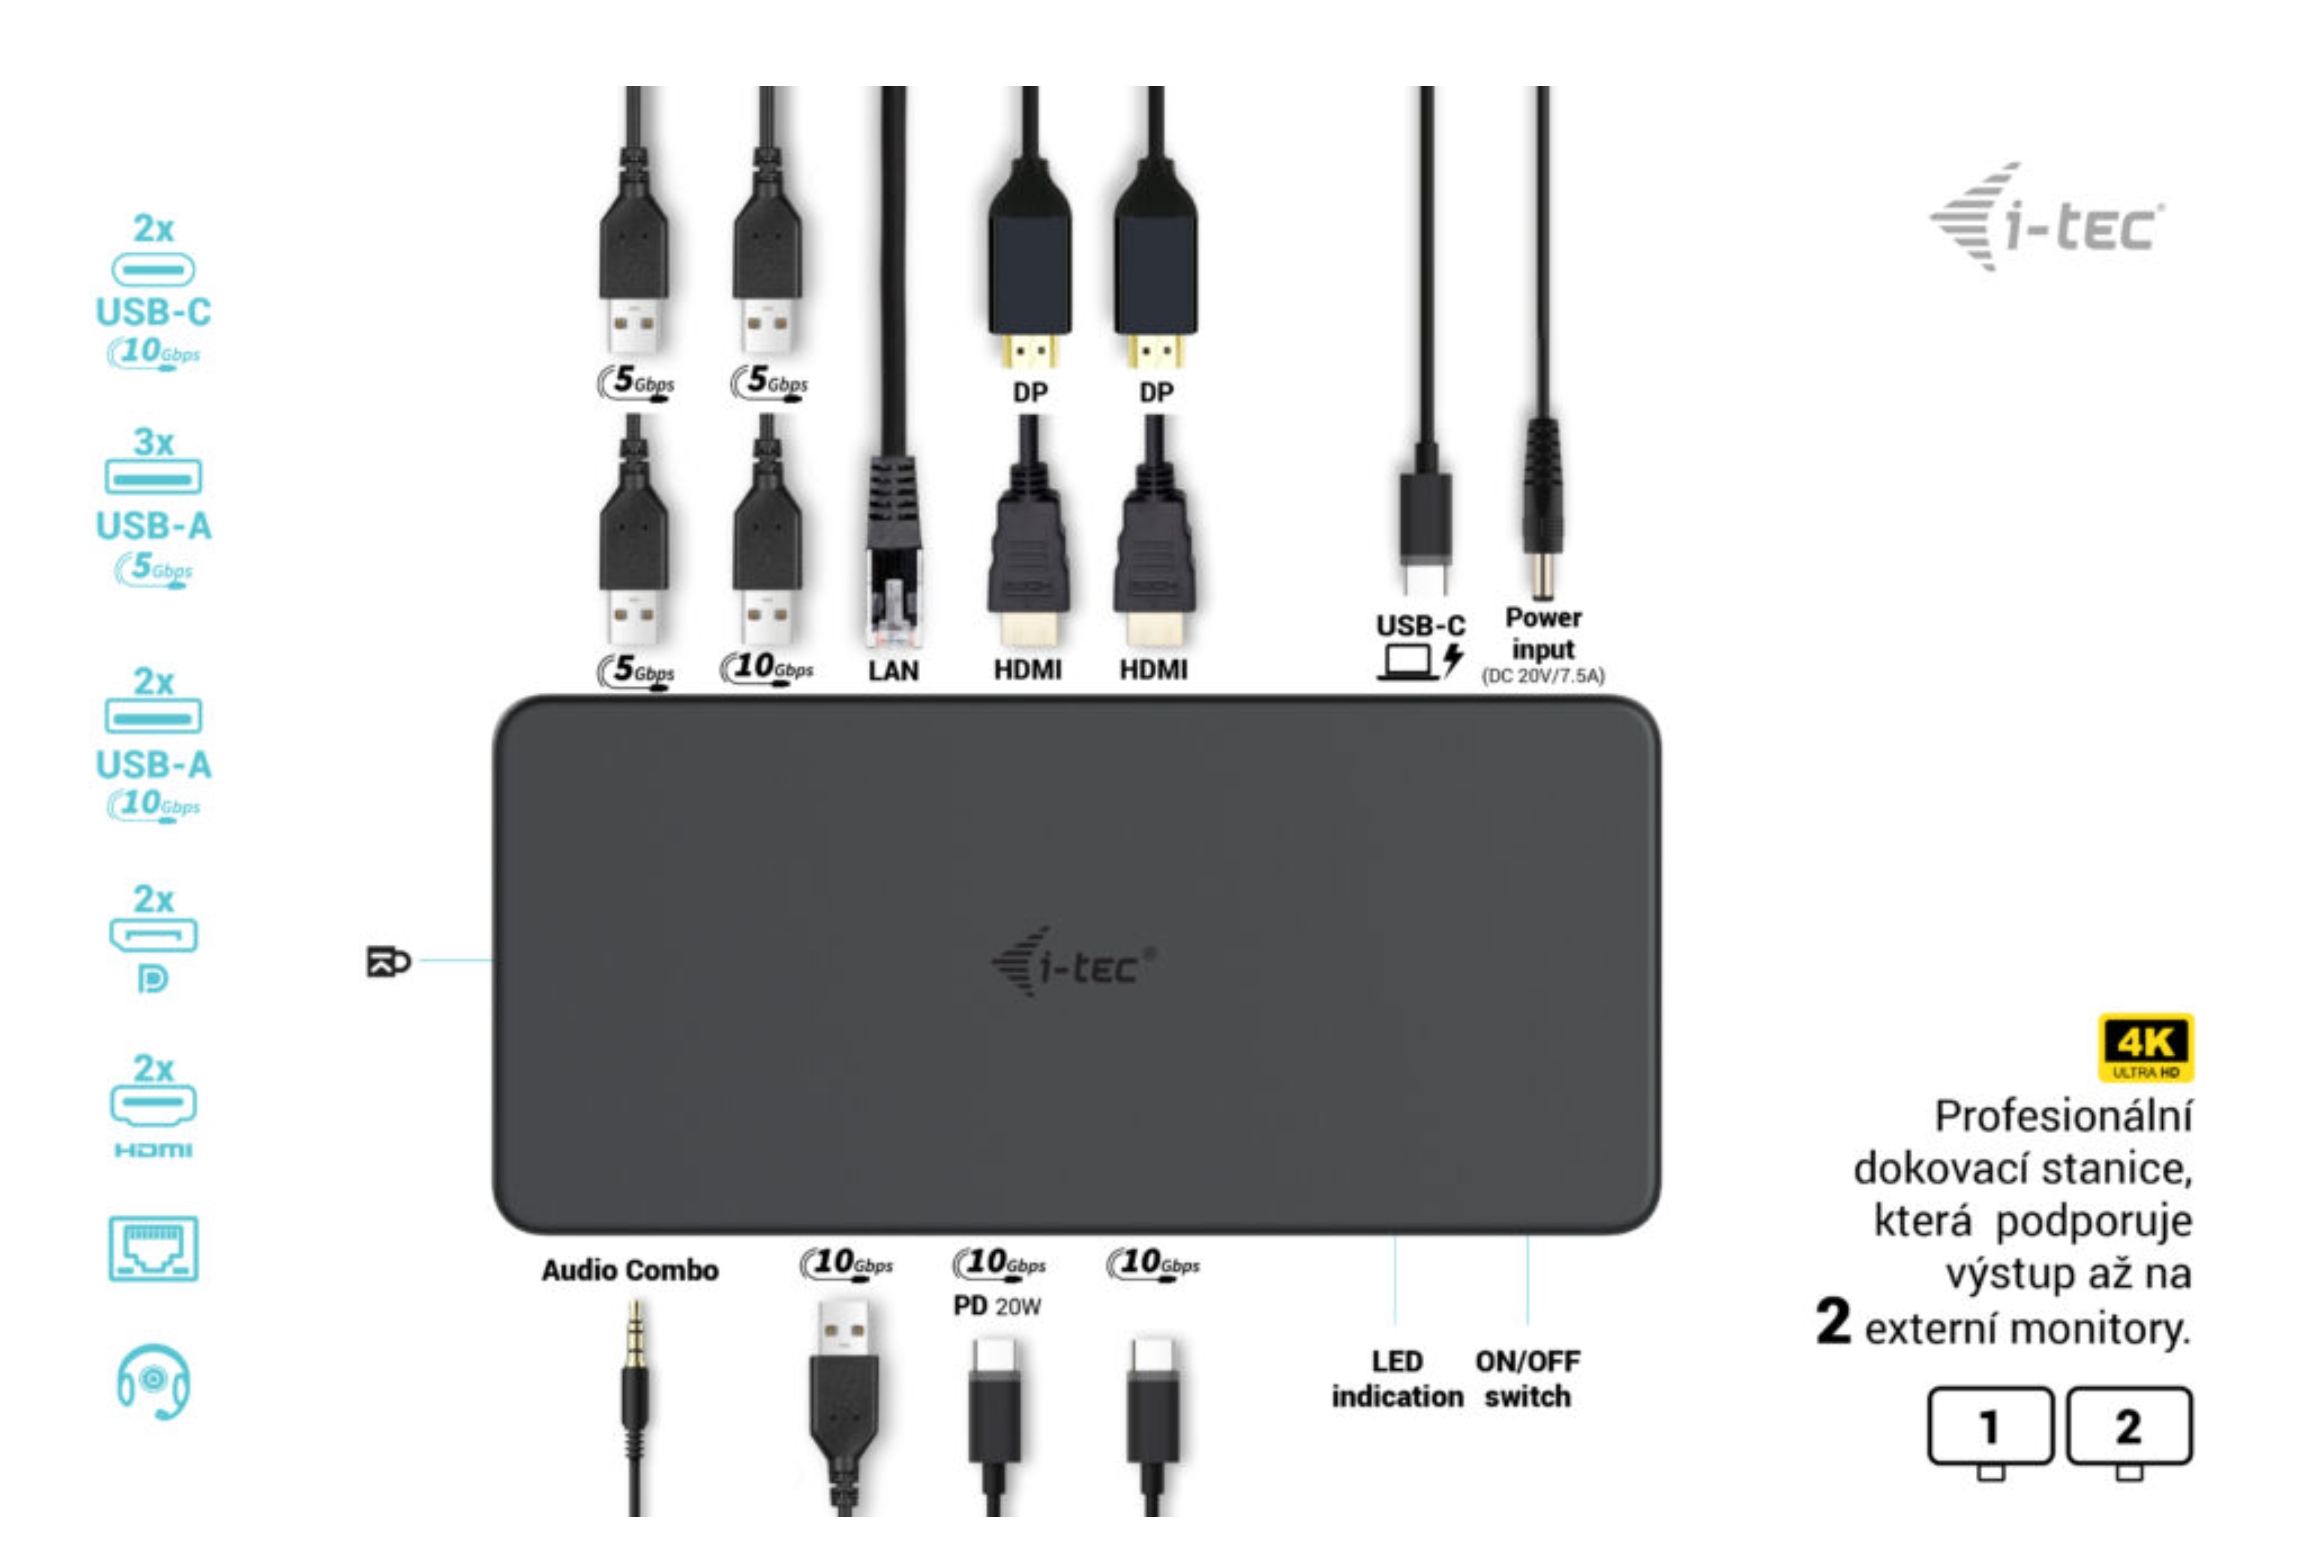 i-tec USB 3.0/ USB-C/ Thunderbolt 3 Professional Dual 4K Display Docking Station Gen2, PD 100W 